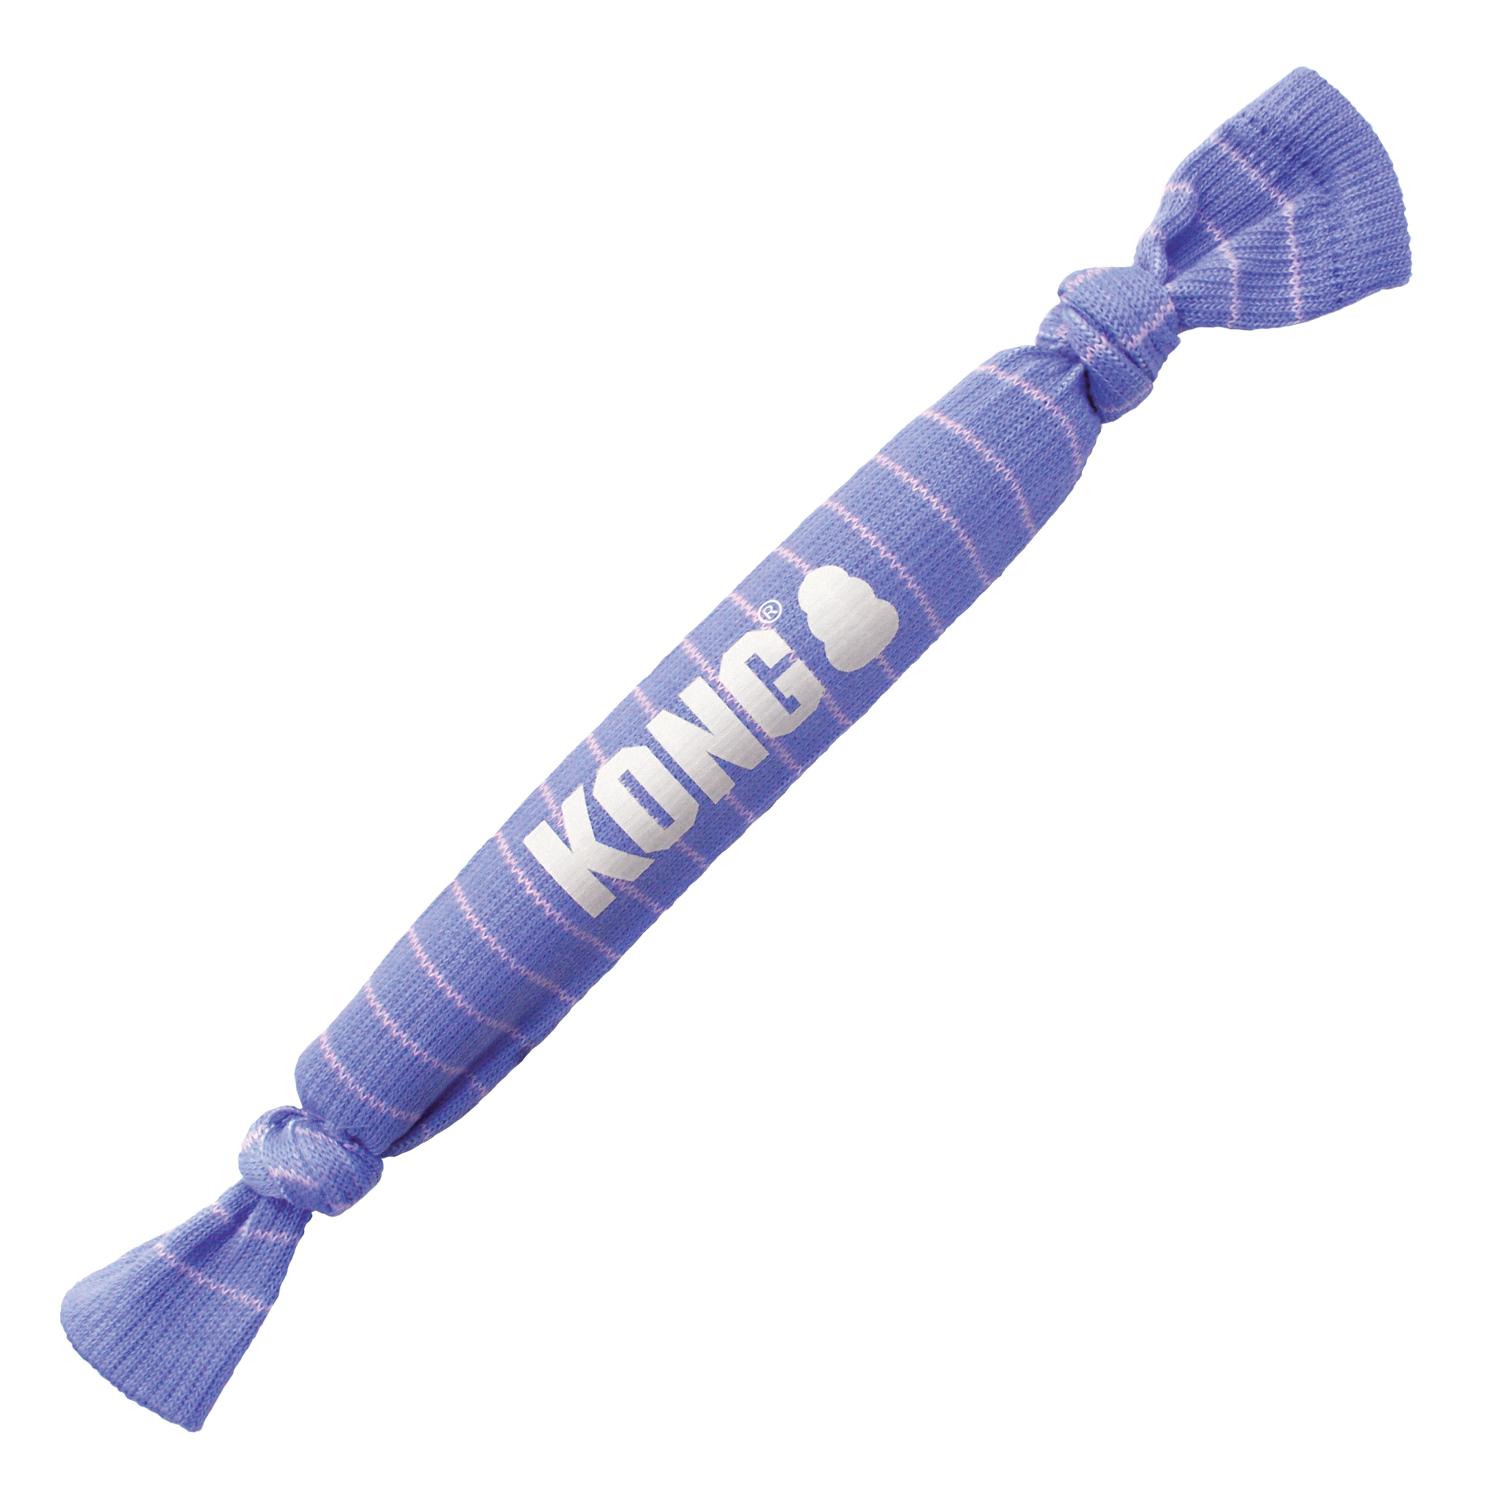 KONG Signature Crunch corde single pour chiot